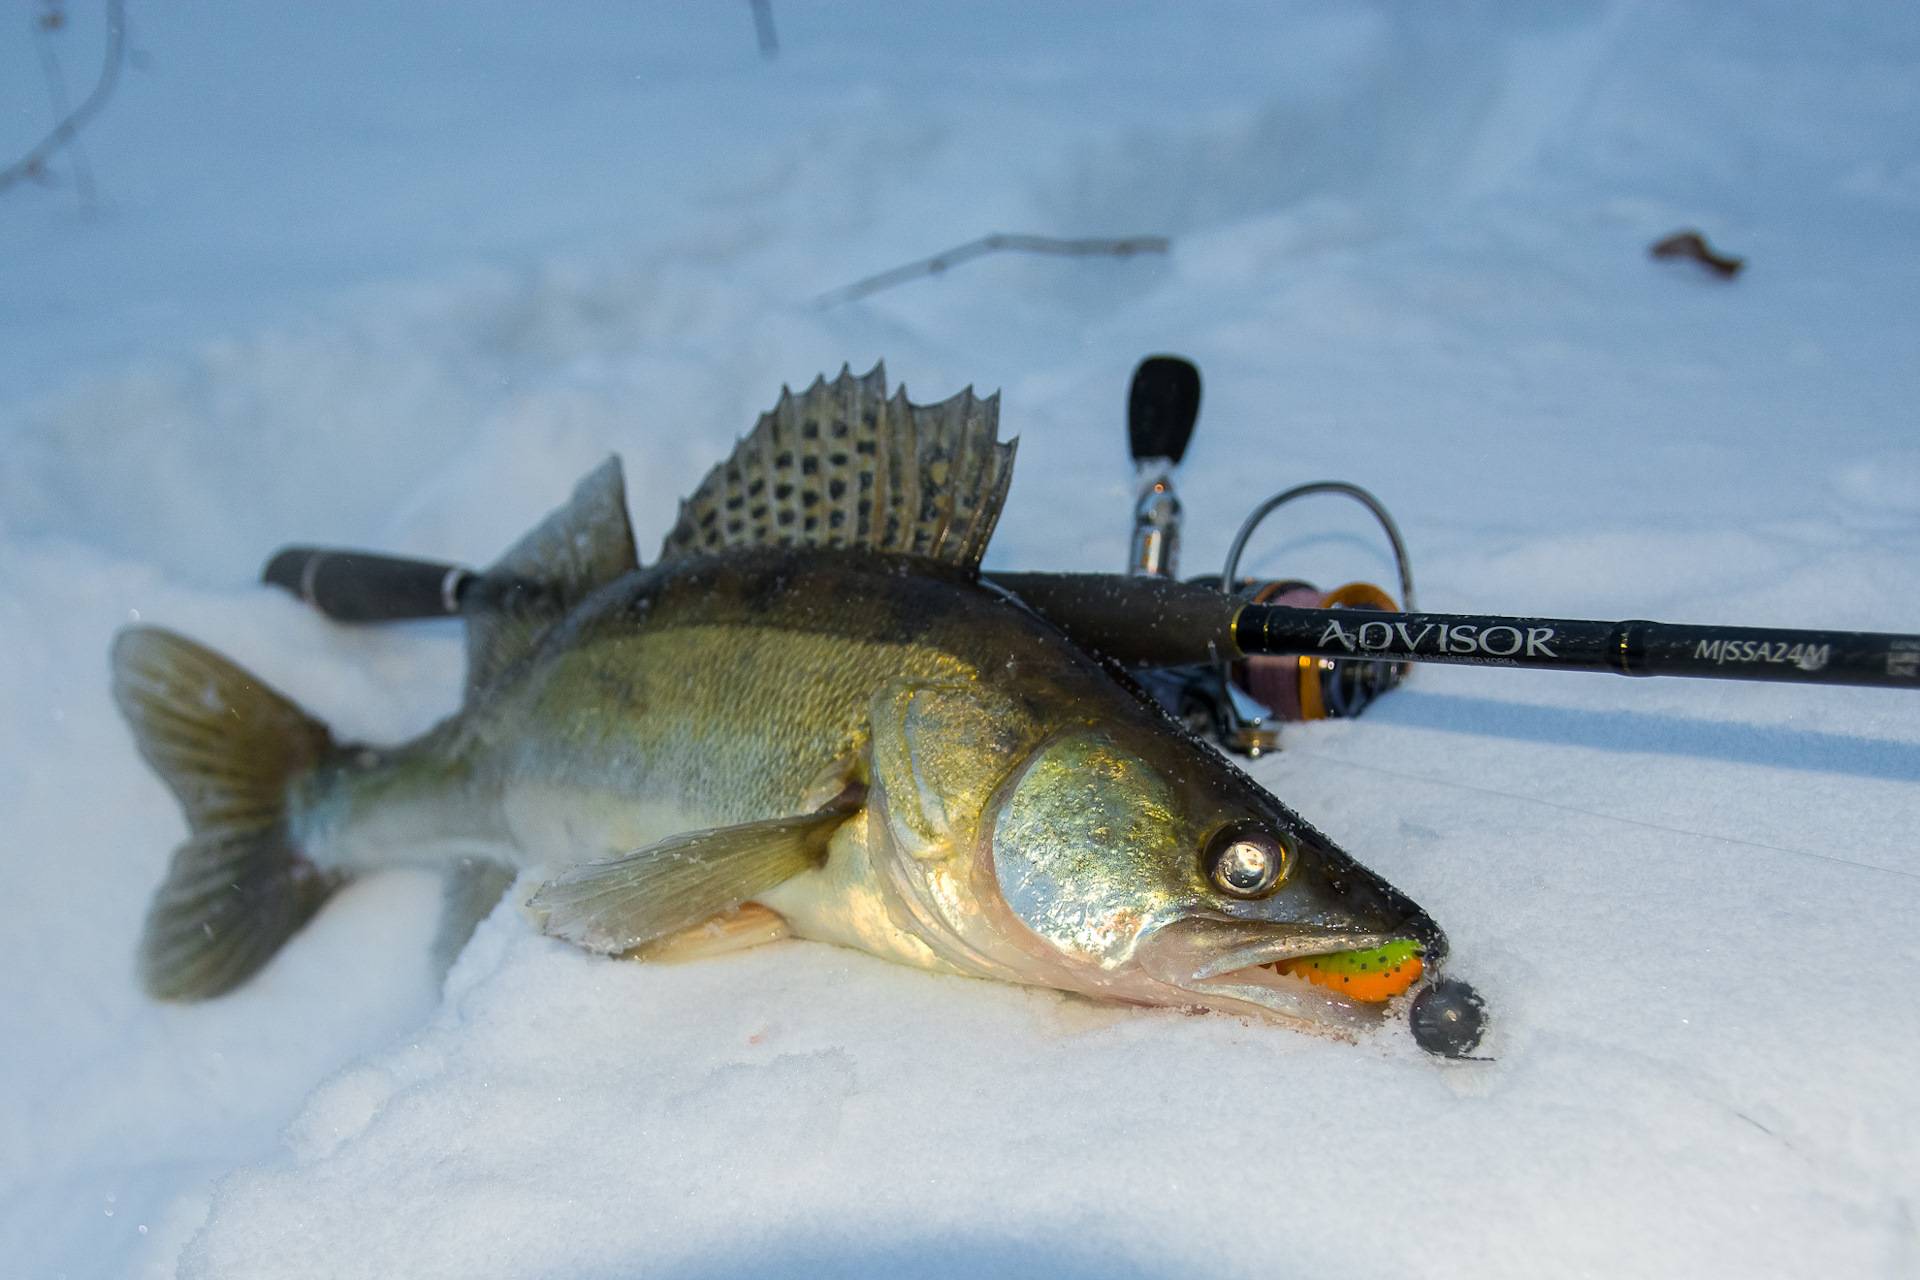 Ловля судака зимой на ратлин: зимняя рыбалка со льда, видео и топ лучших раттлин